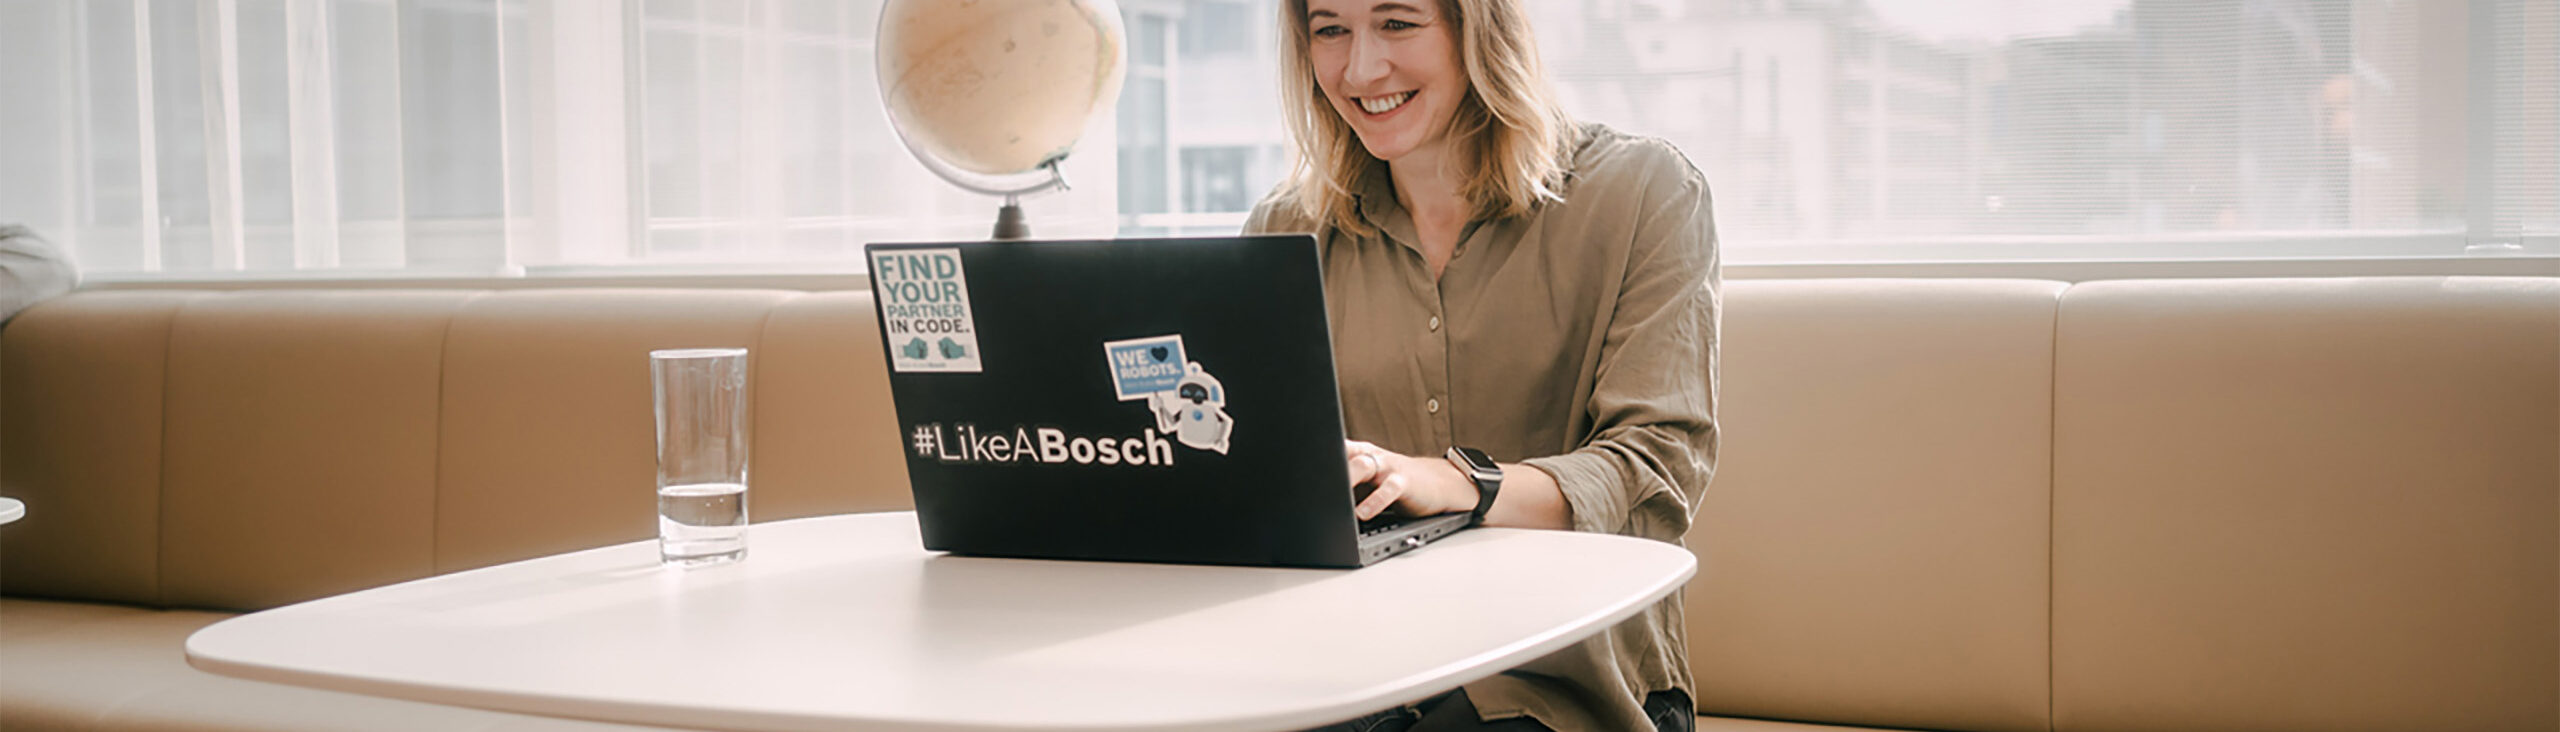 Frau arbeitet an einem Computer auf dem Bosch Sticker kleben